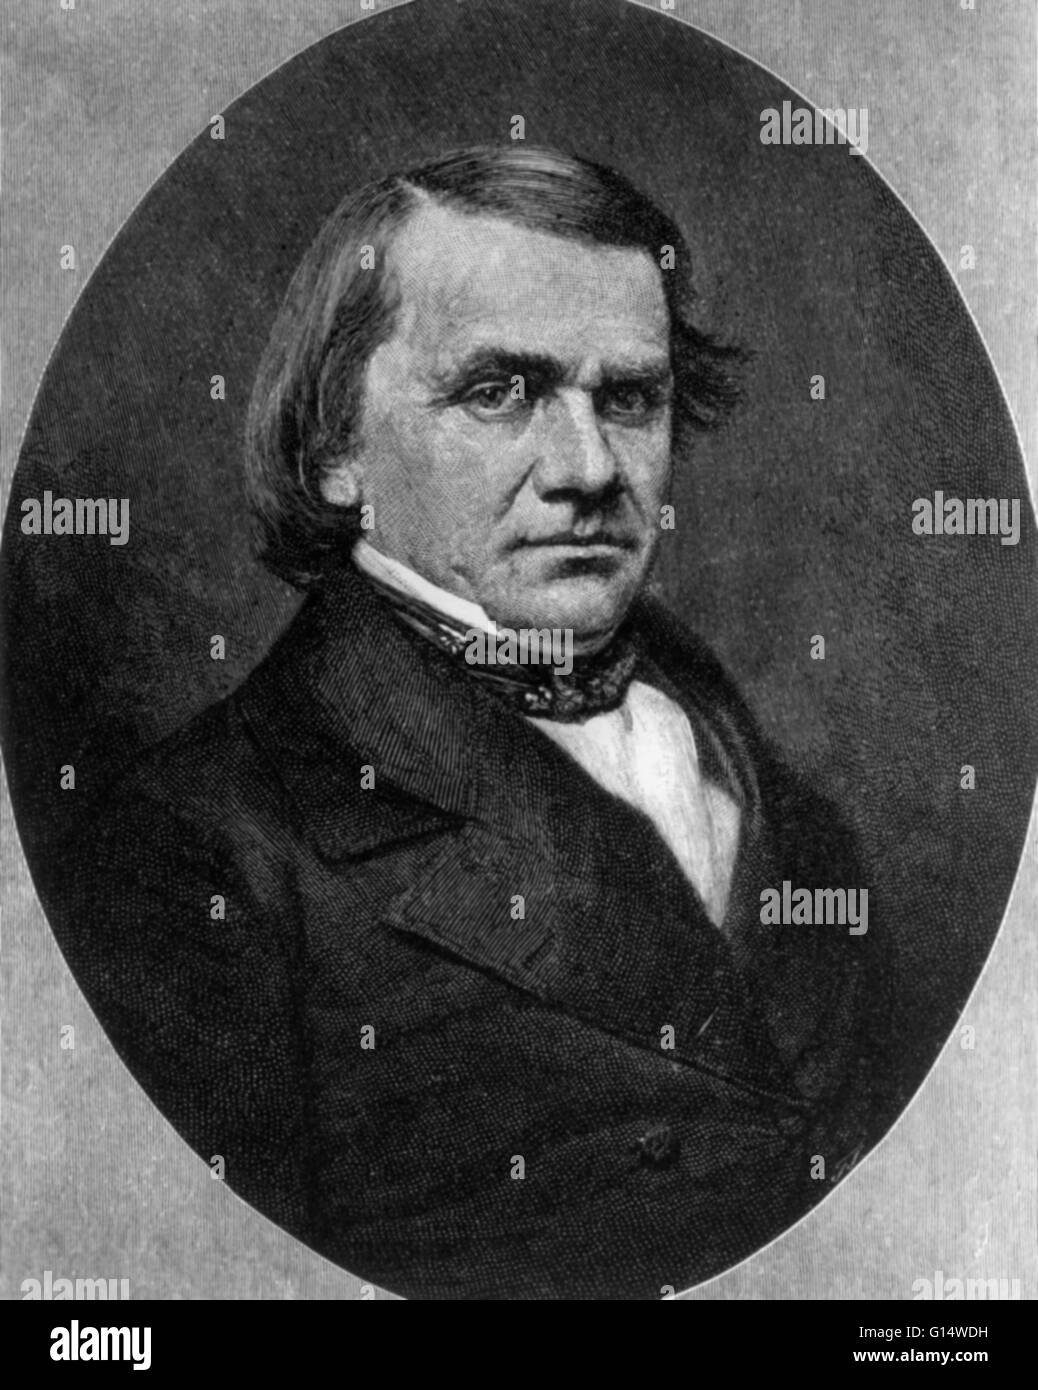 Porträt des Stephen A. Douglas im Jahre 1887. Stephen Arnold Douglas (23. April 1813 - 3. Juni 1861) war ein US-amerikanischer Politiker aus Illinois. Er entwarf den Kansas-Nebraska Act 1854, erstellen die Gebiete von Kansas und Nebraska, sowie effektiv r Stockfoto